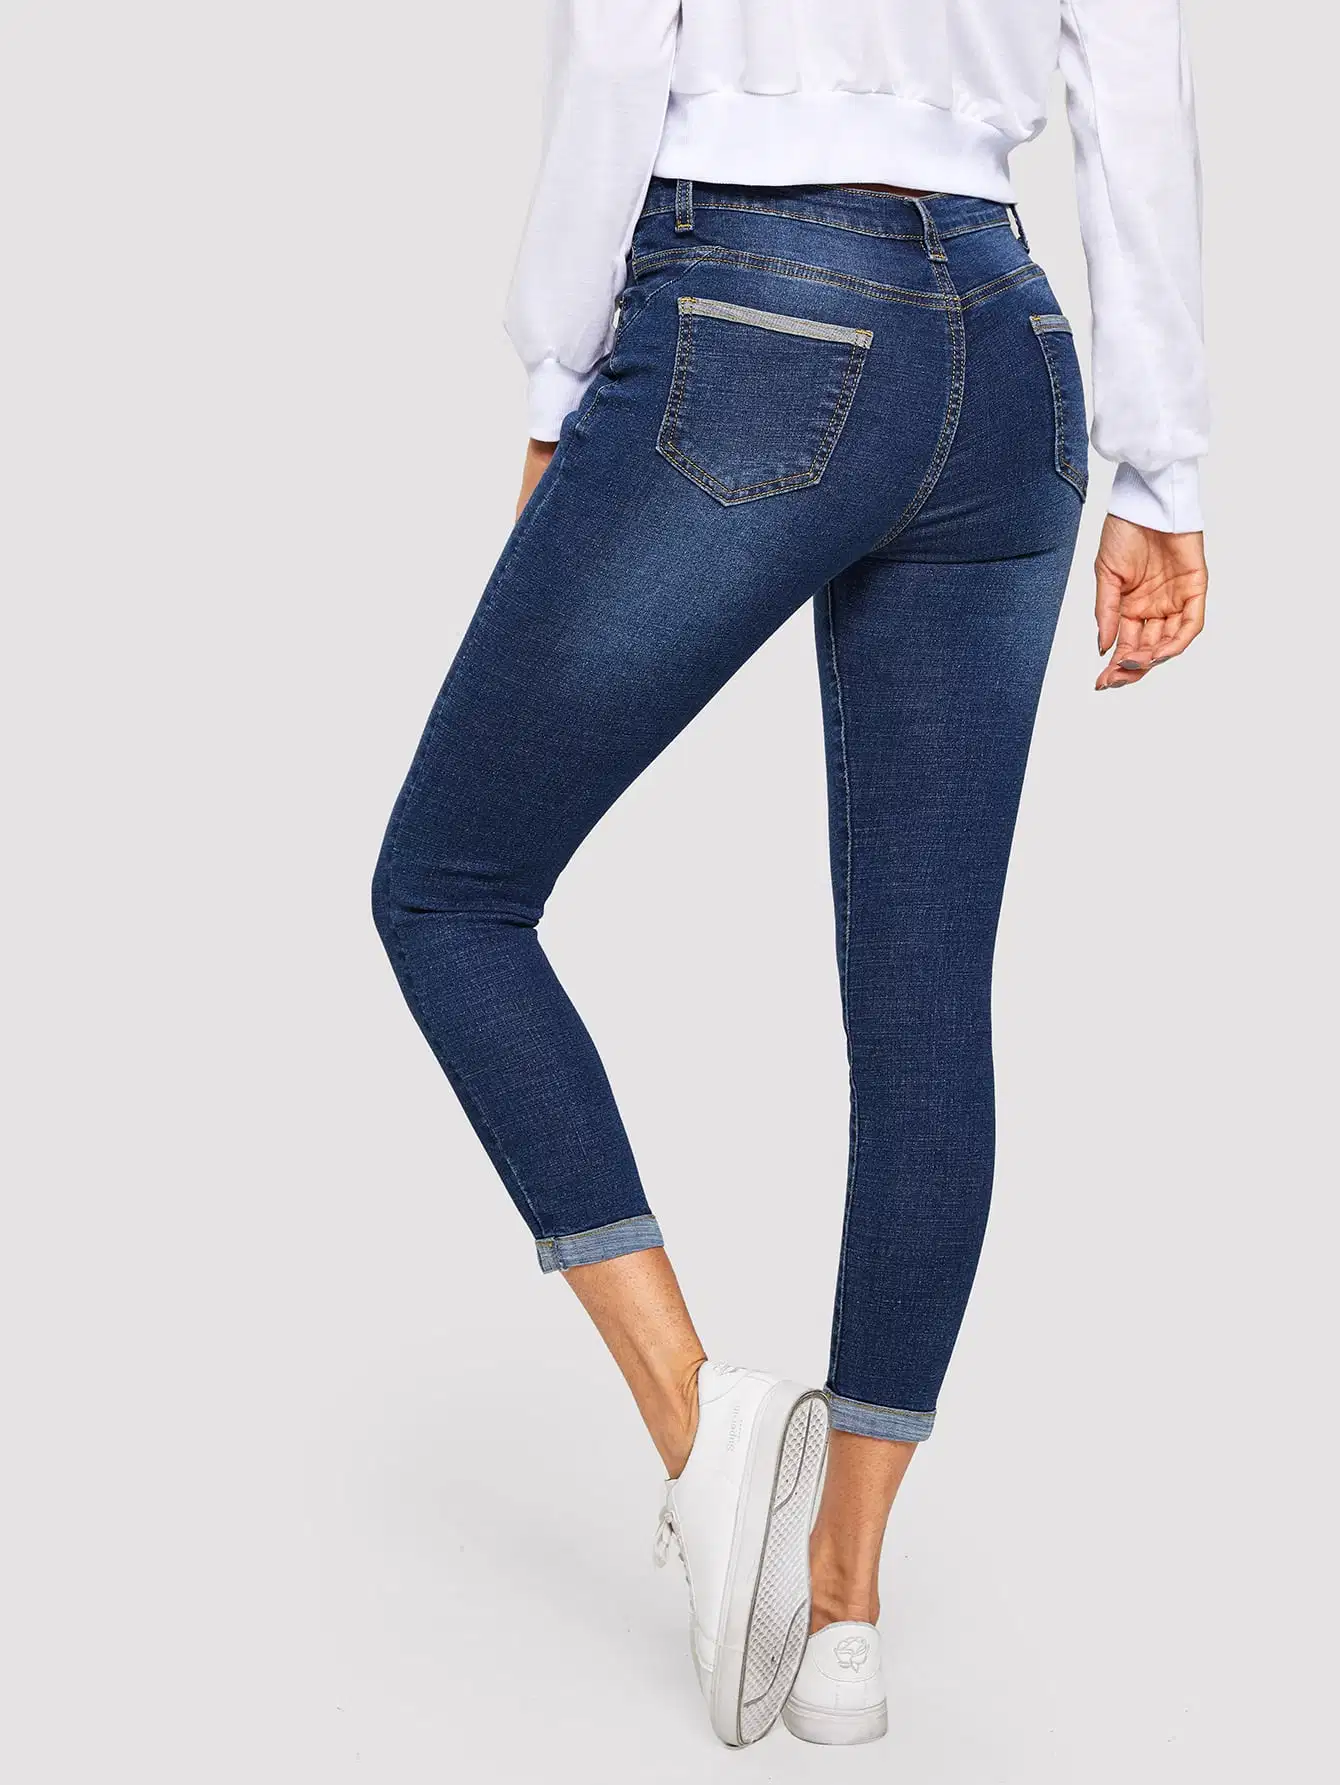 Con Cintura baja de mediados de-Azul cero y doble la parte inferior de la calidad de estiramiento Hem nueva moda Dama Jeans vaqueros Slim montaje